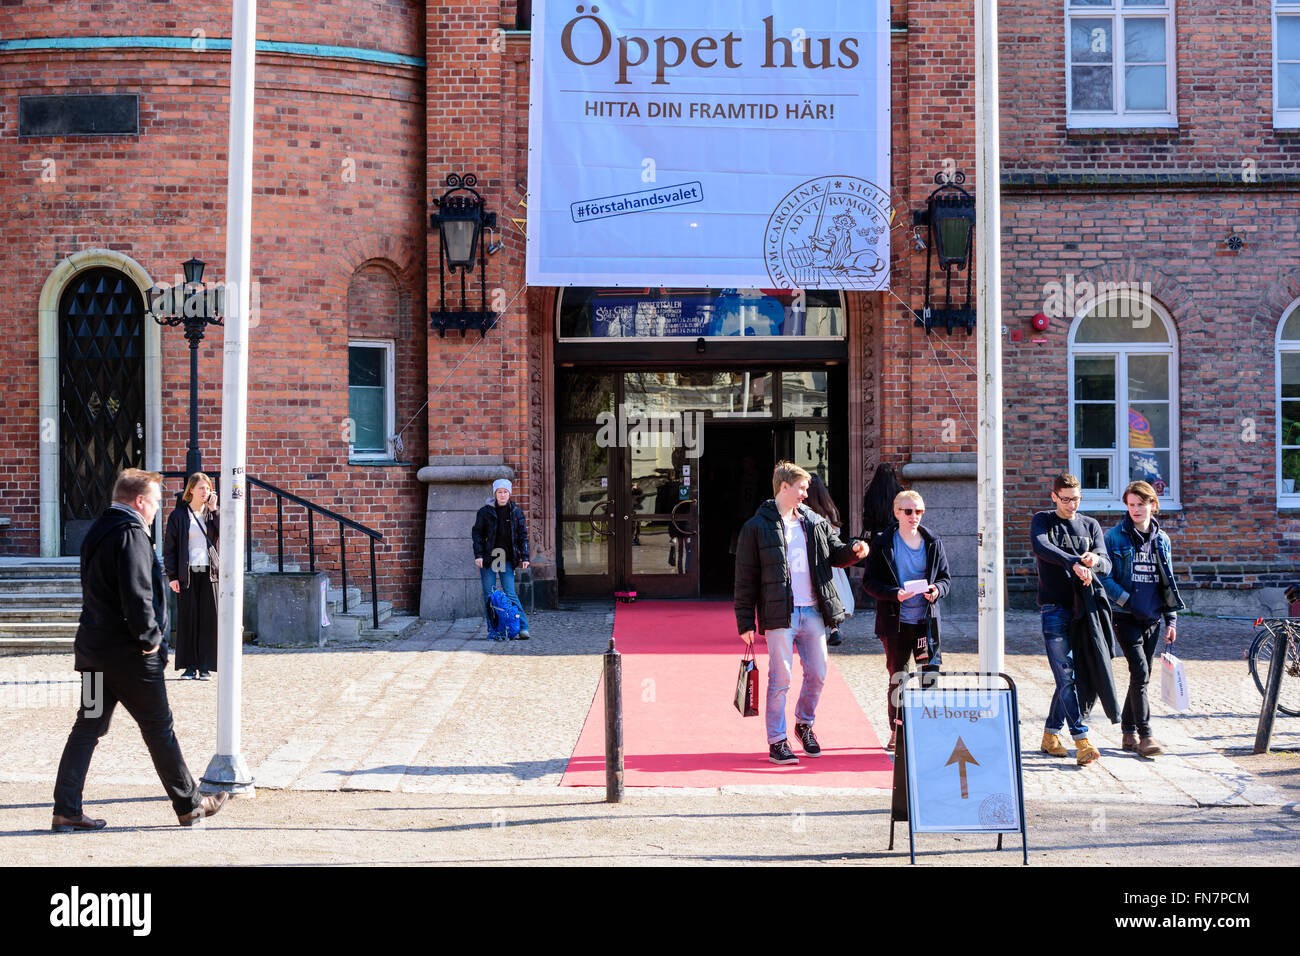 Lund, Suède - 12 mars 2016 : l'université a une journée portes ouvertes afin d'attirer de nouveaux étudiants. Voici l'entrée le Af-borgen w Banque D'Images